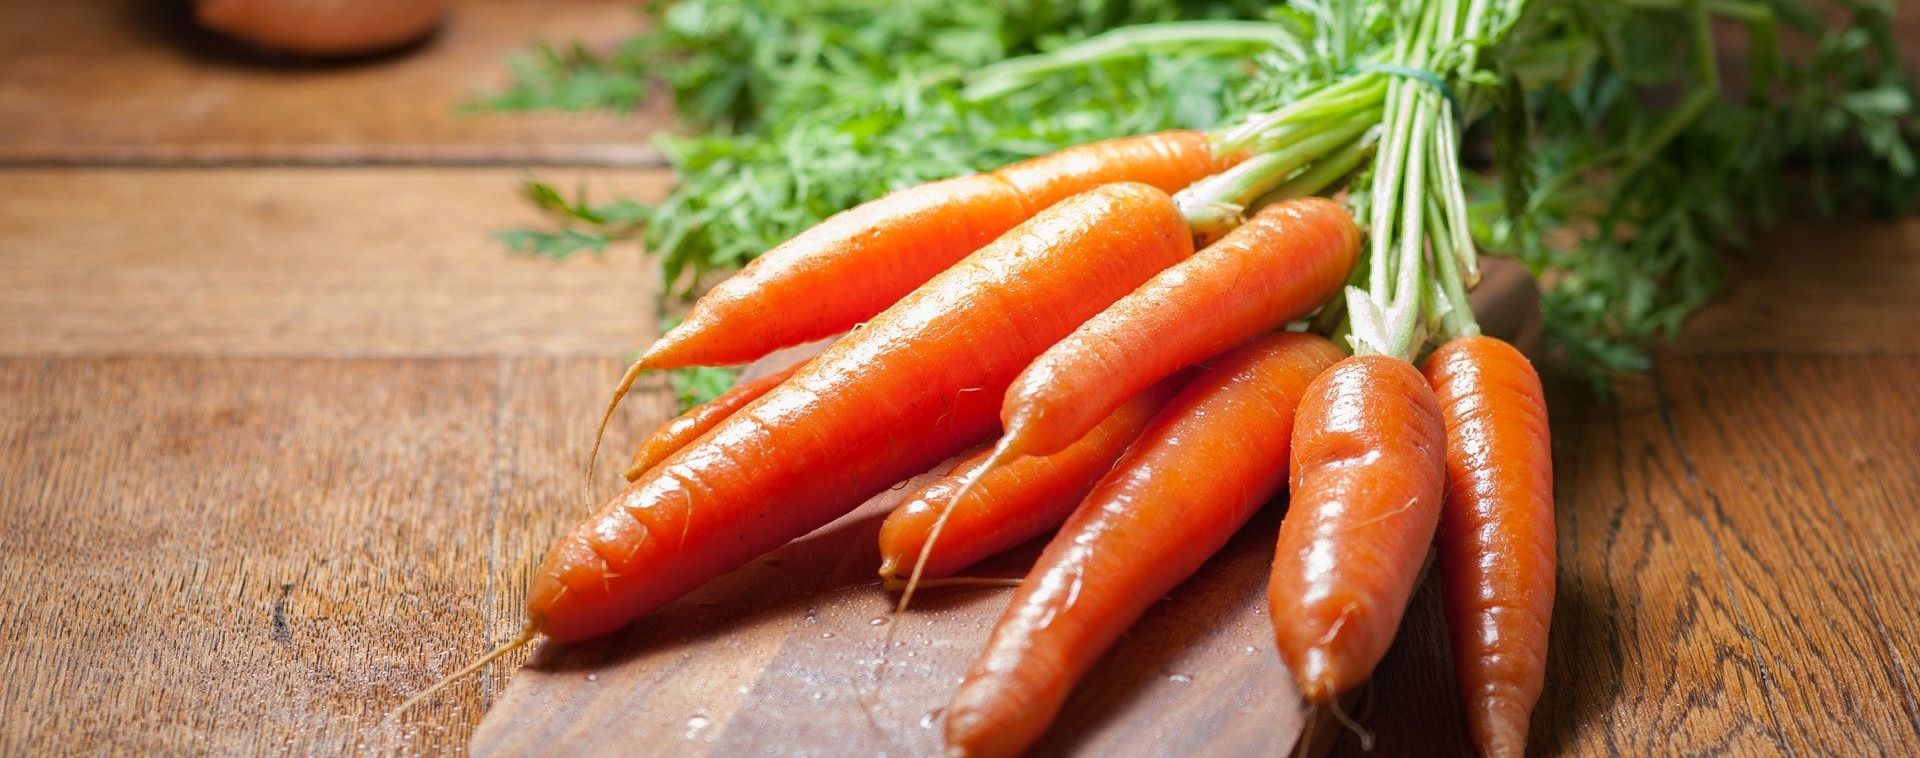 В Украине вслед за луком поползли вверх цены и на морковь: какая сейчас ее стоимость